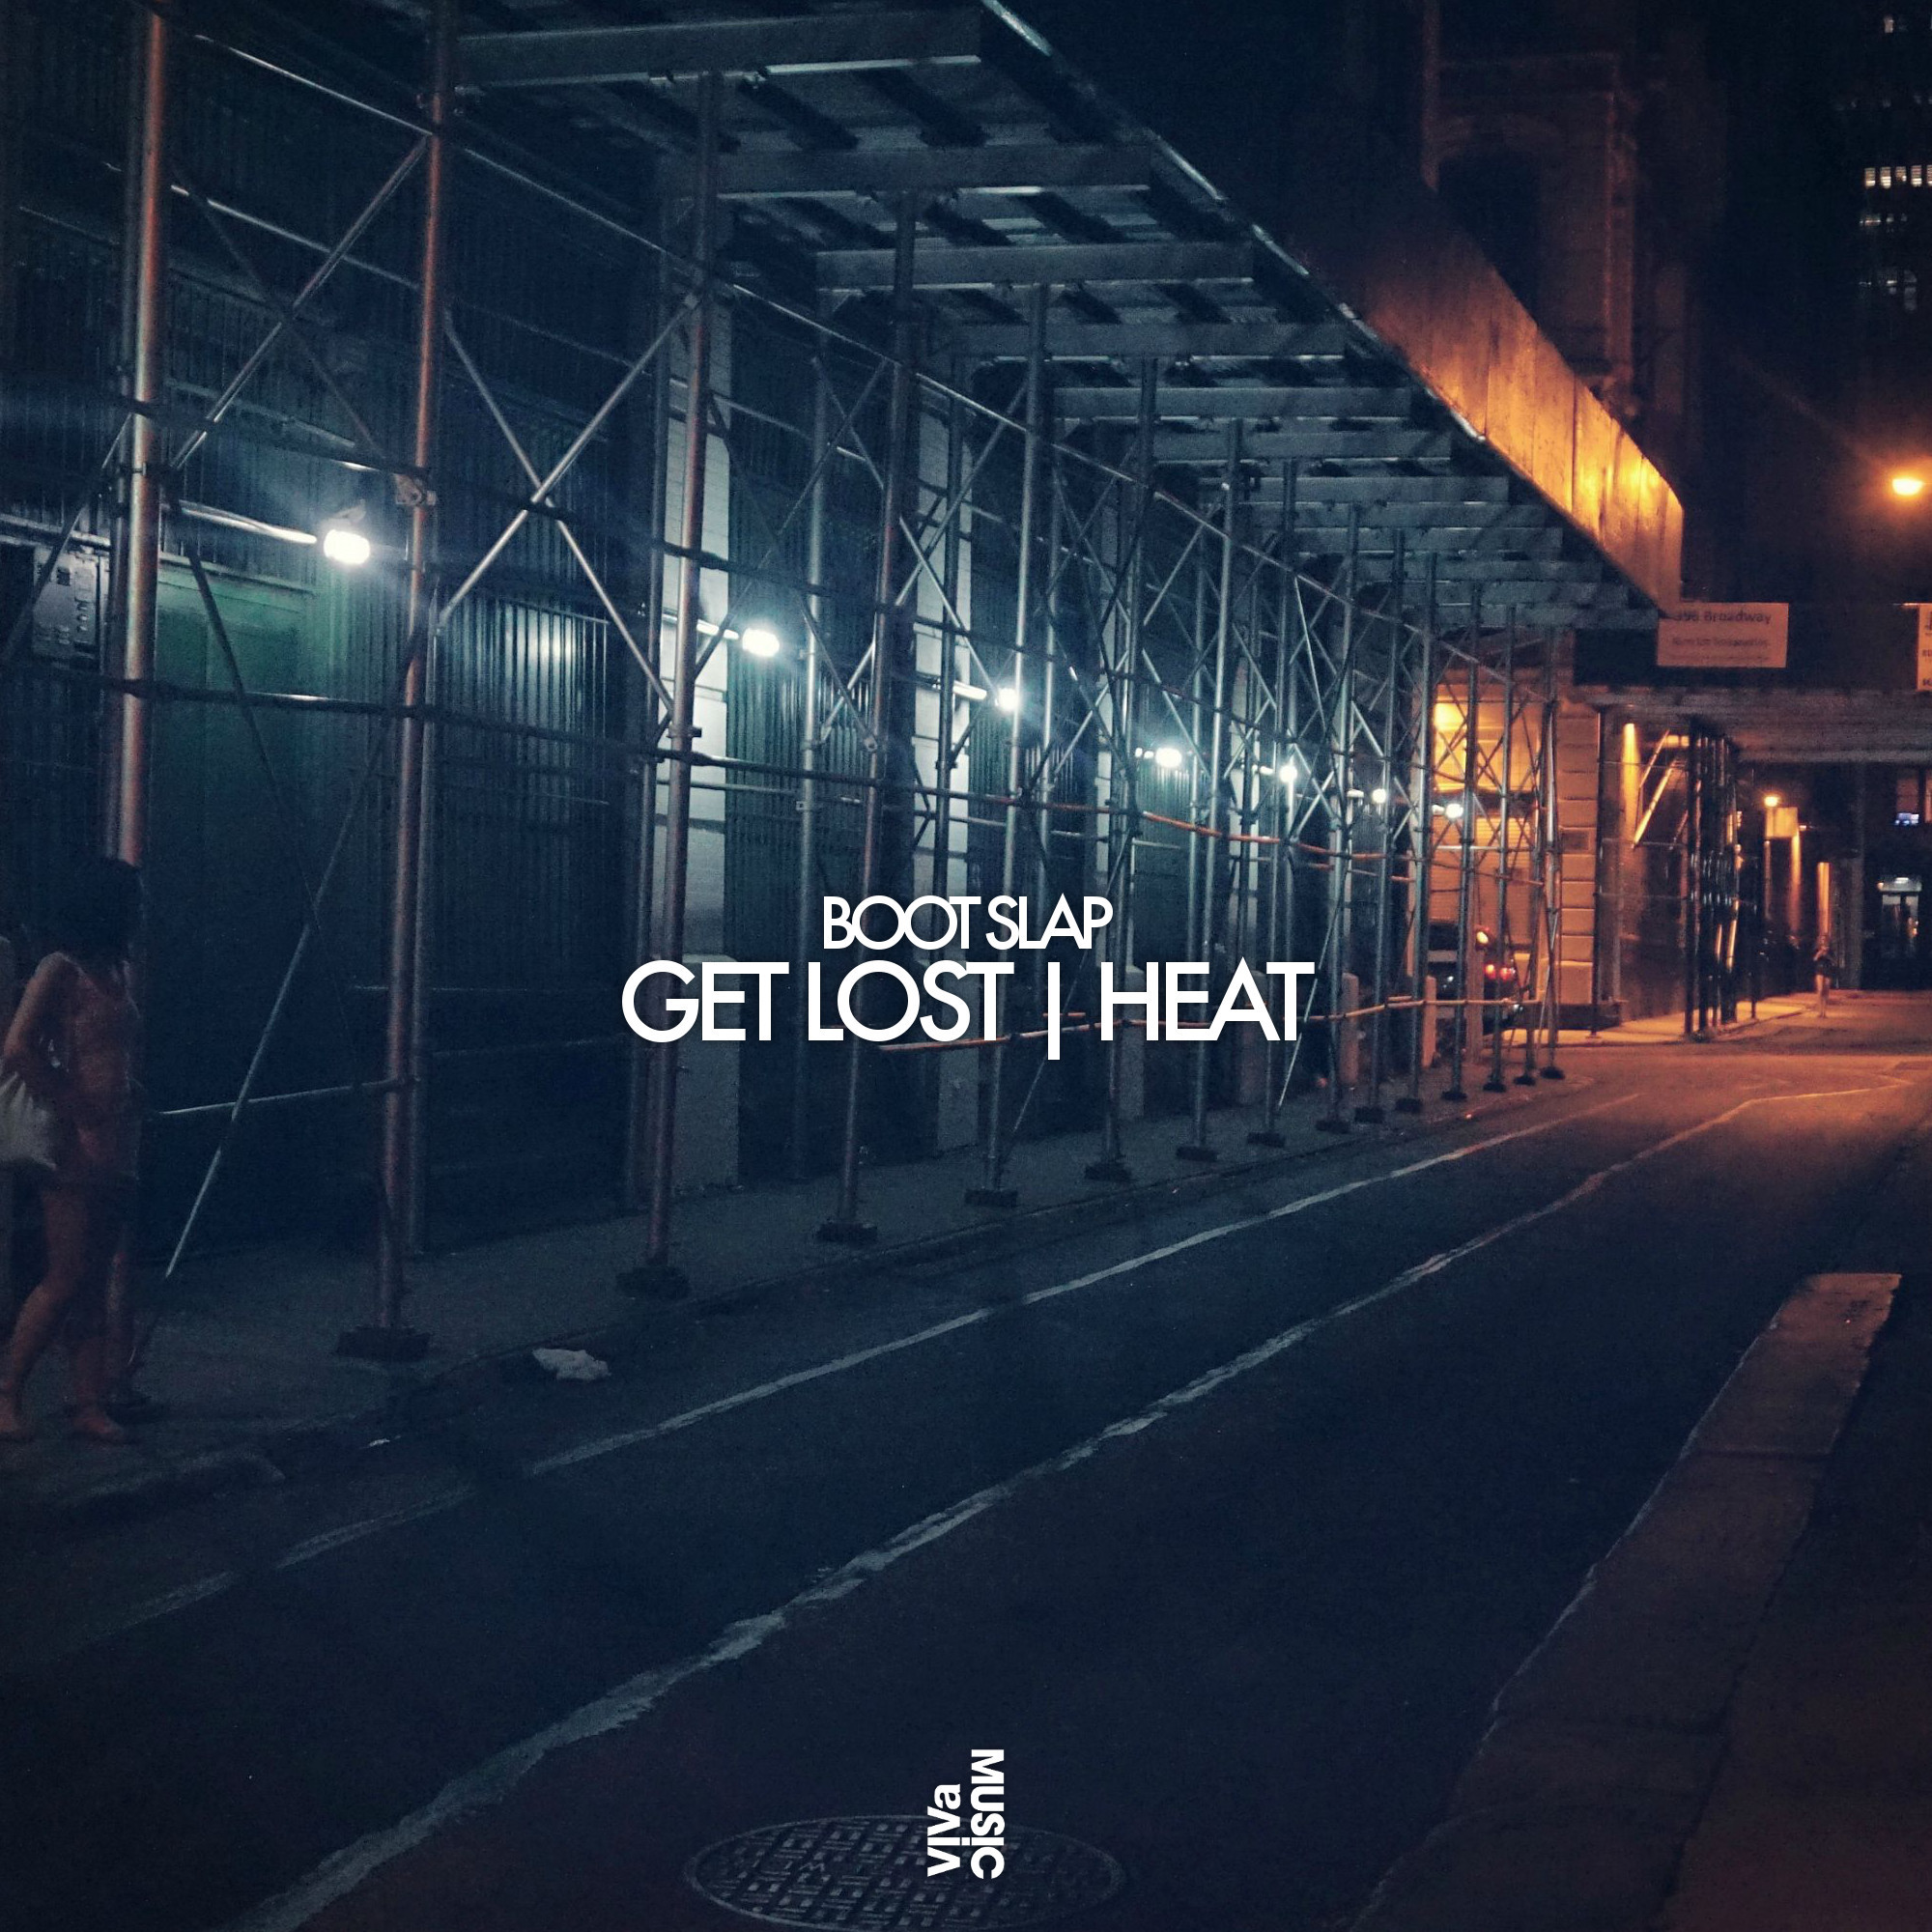 Get Lost (Original Mix)